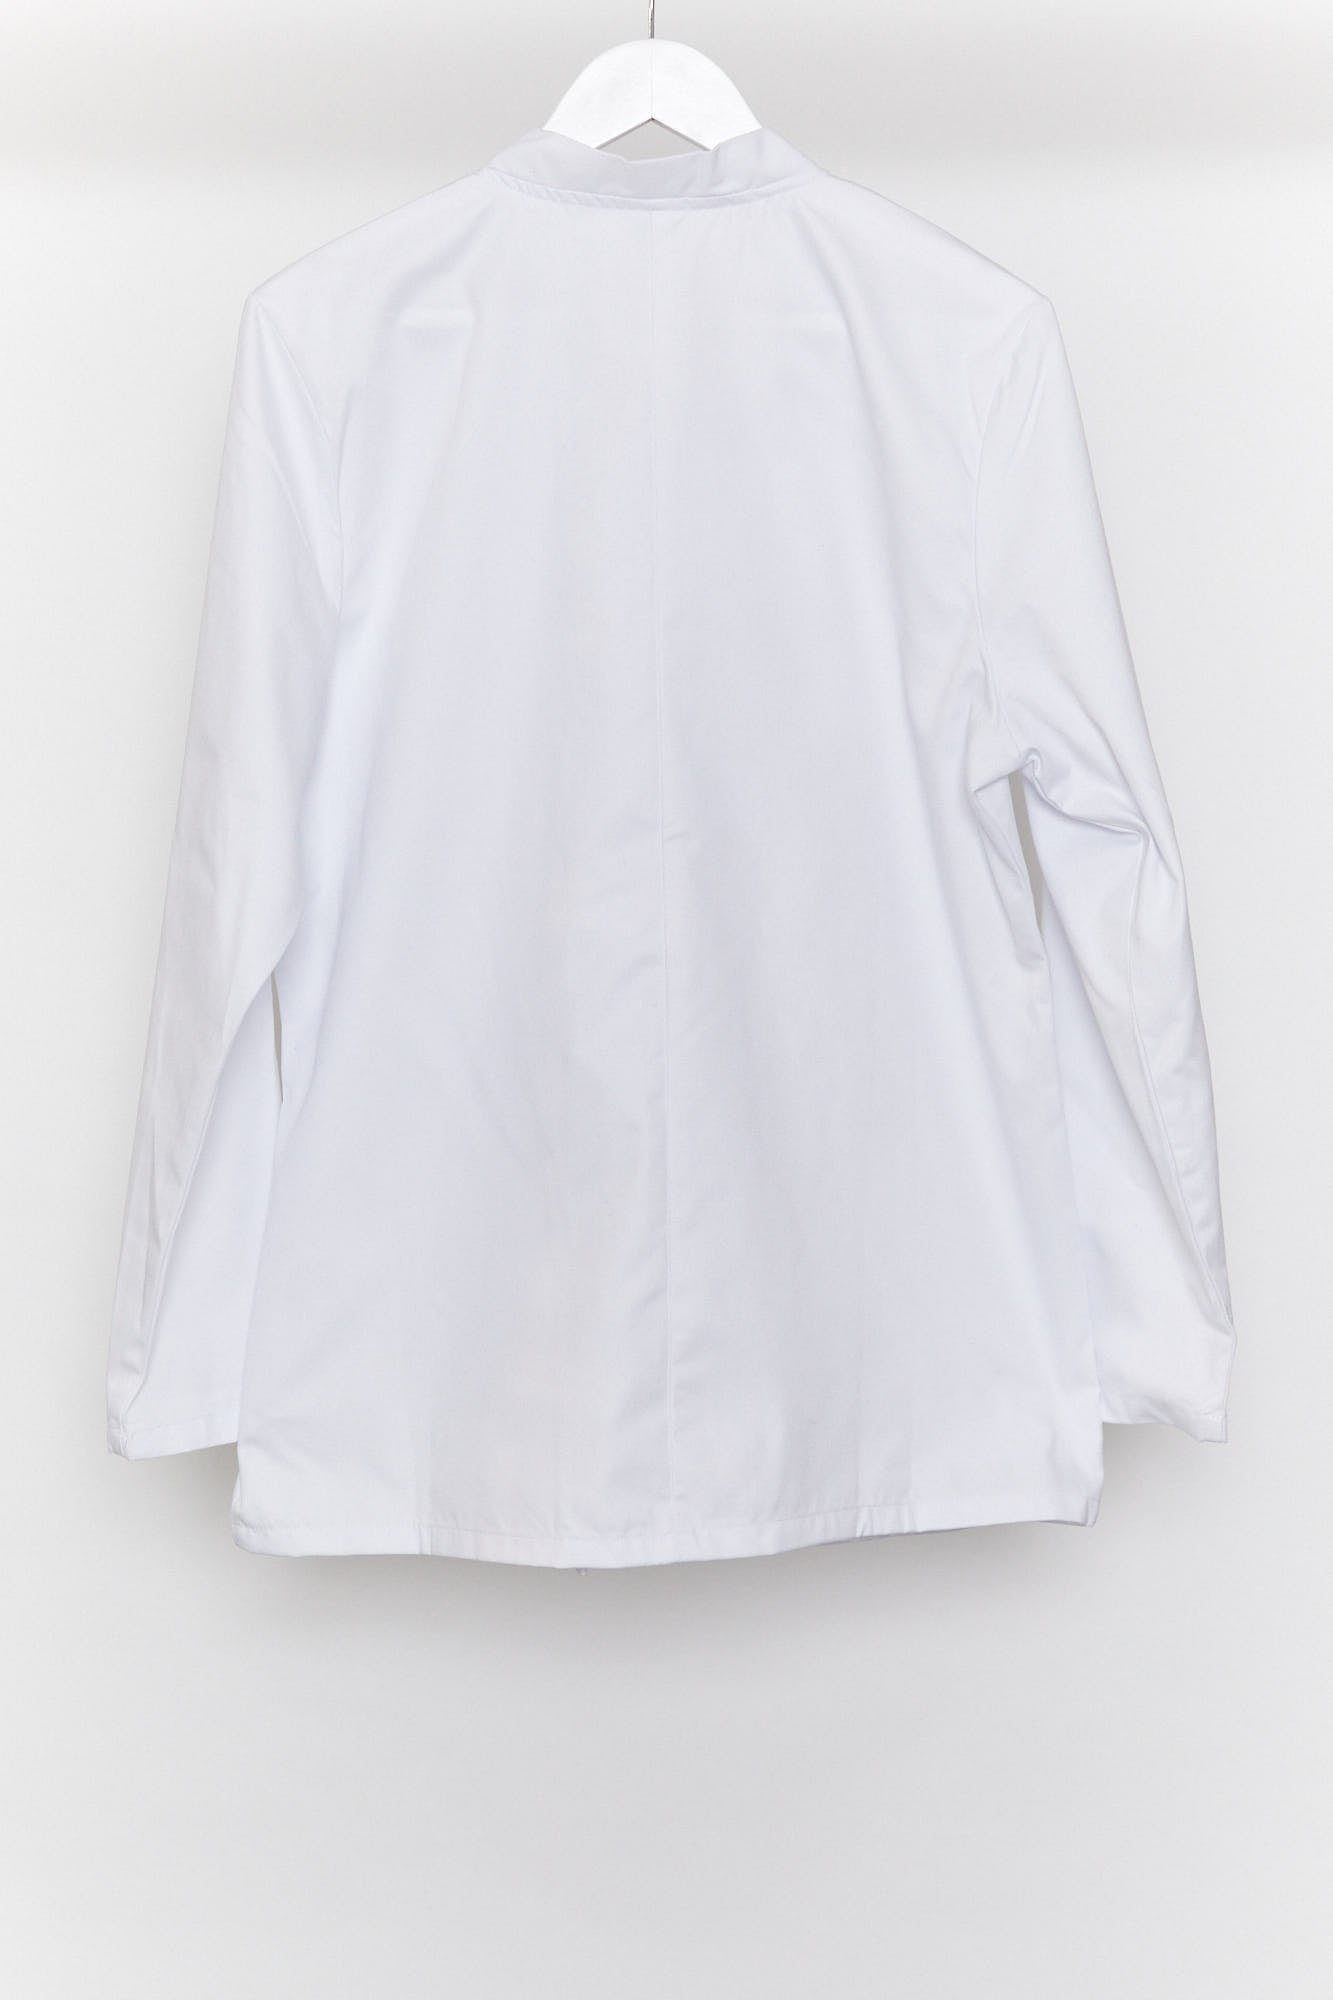 White Chef Jacket Size Medium